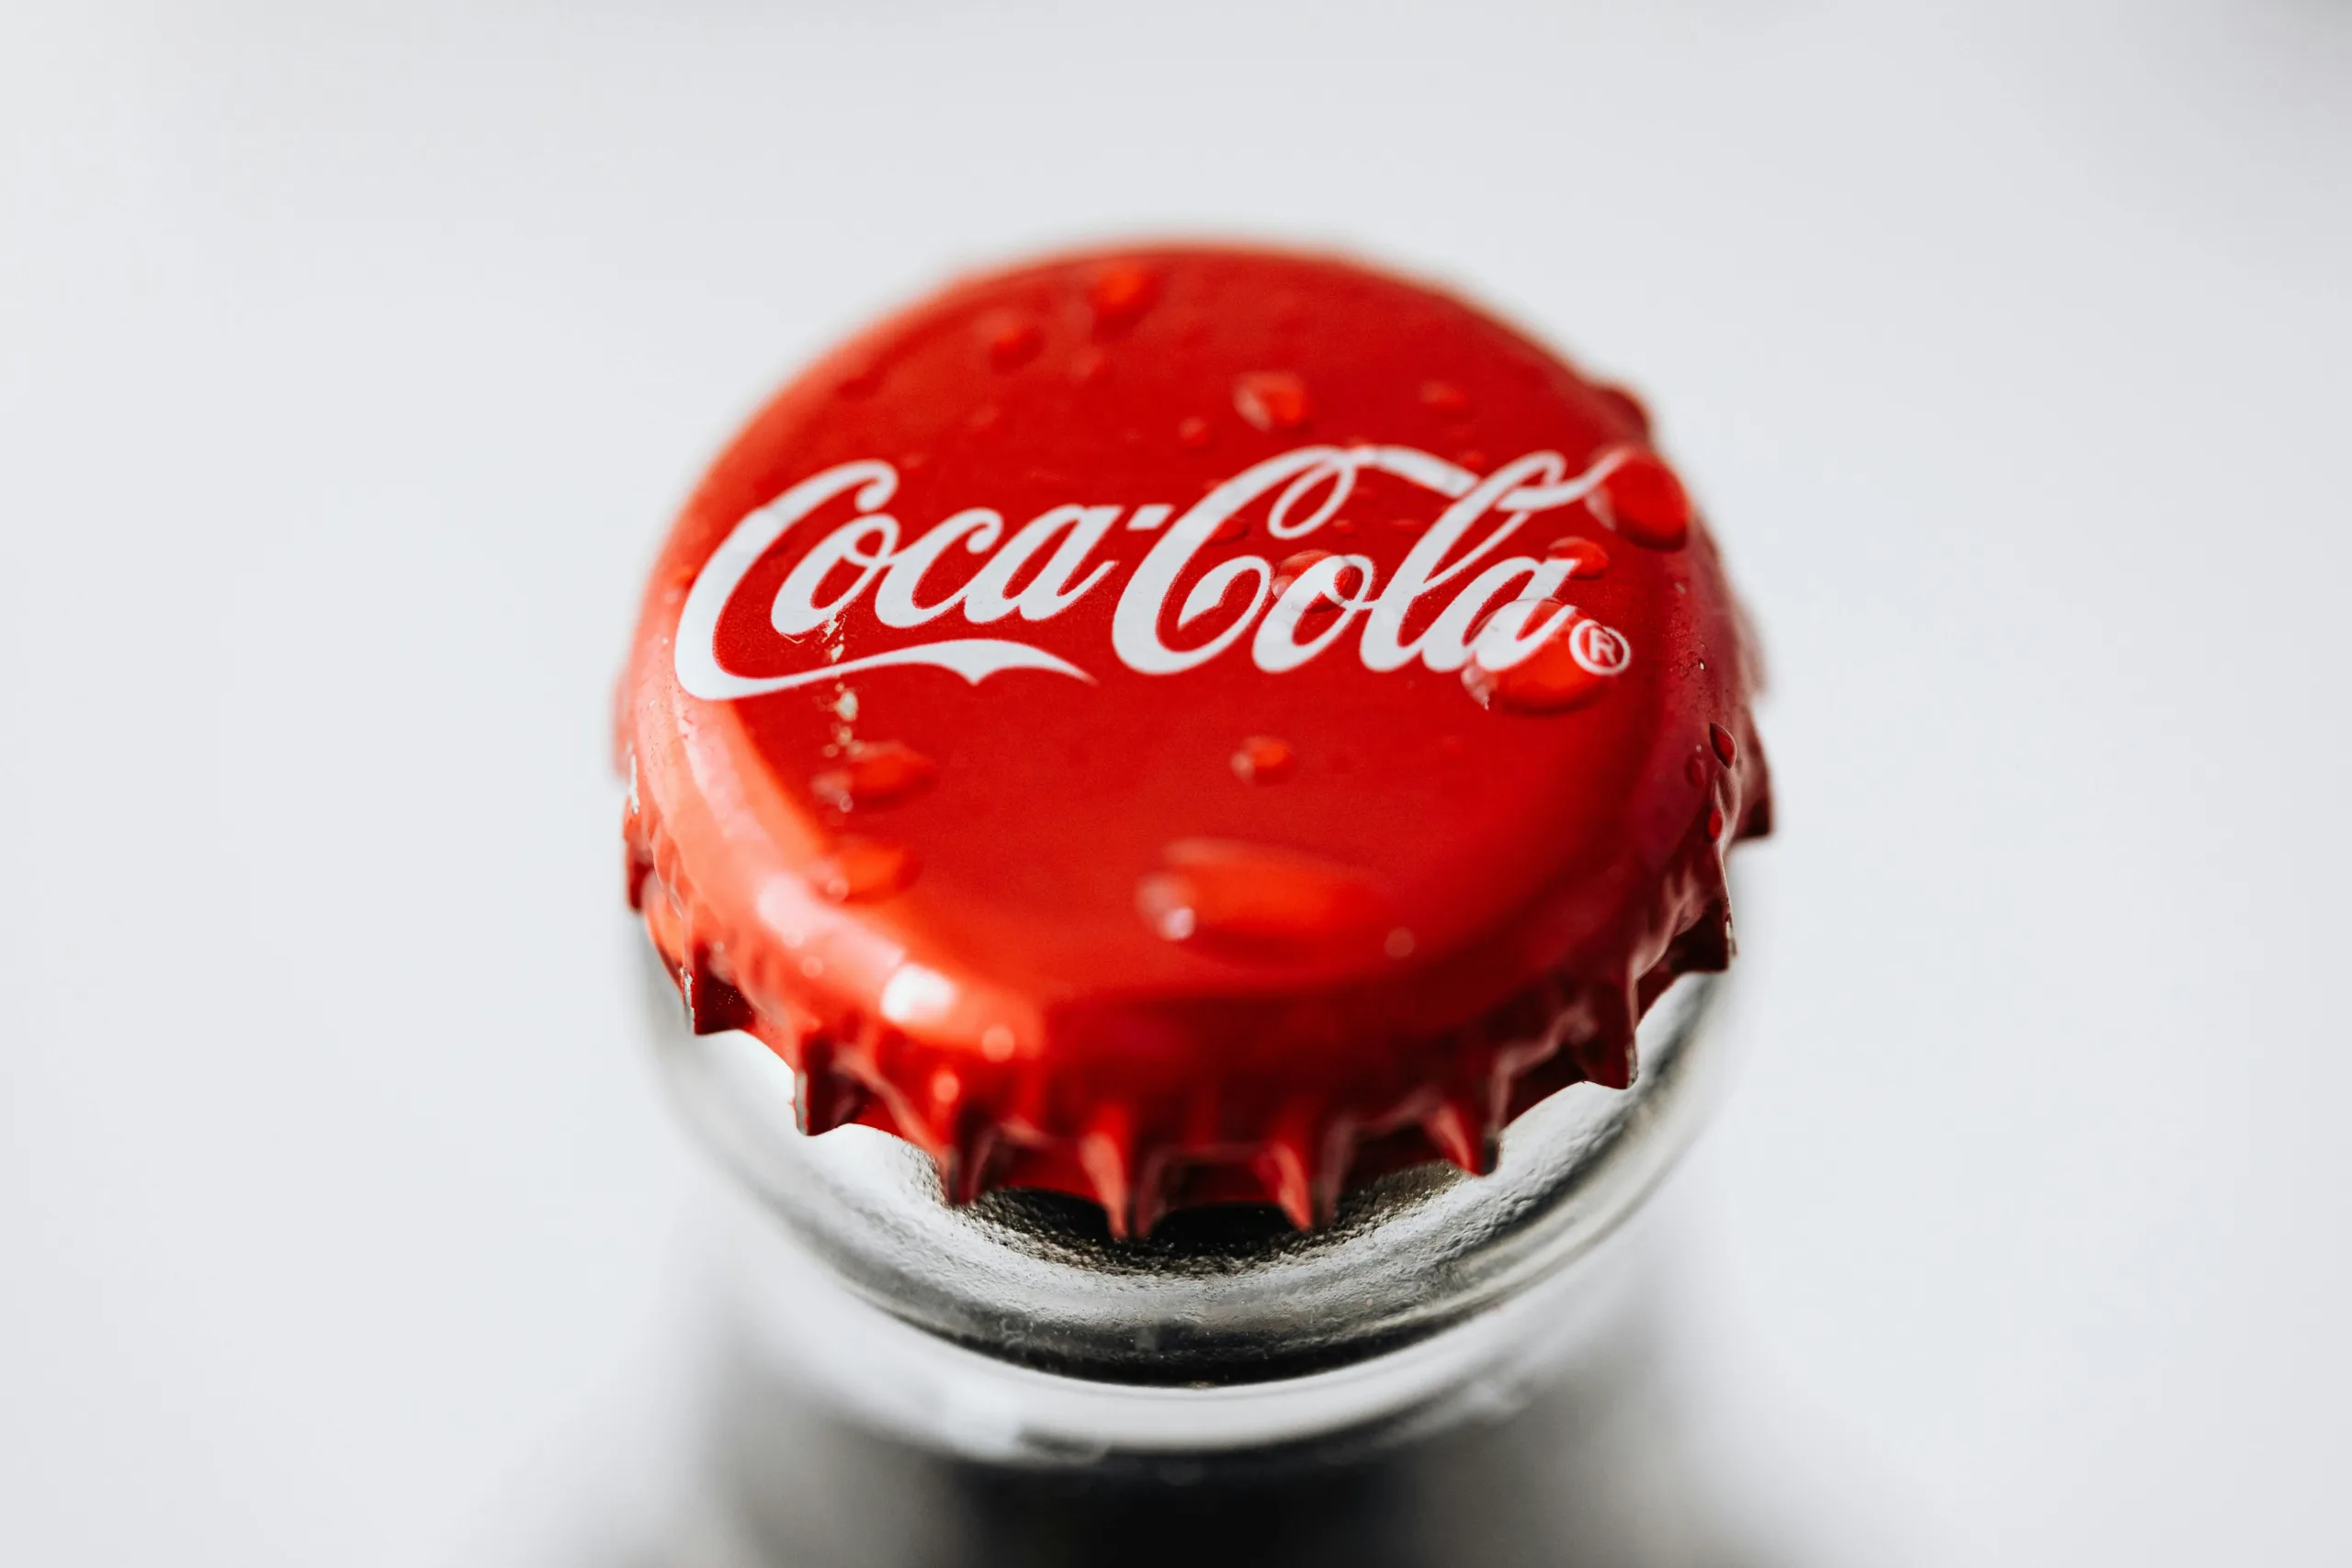 Coca Cola Red Bottle Cap | Photo by Karolina Grabowska